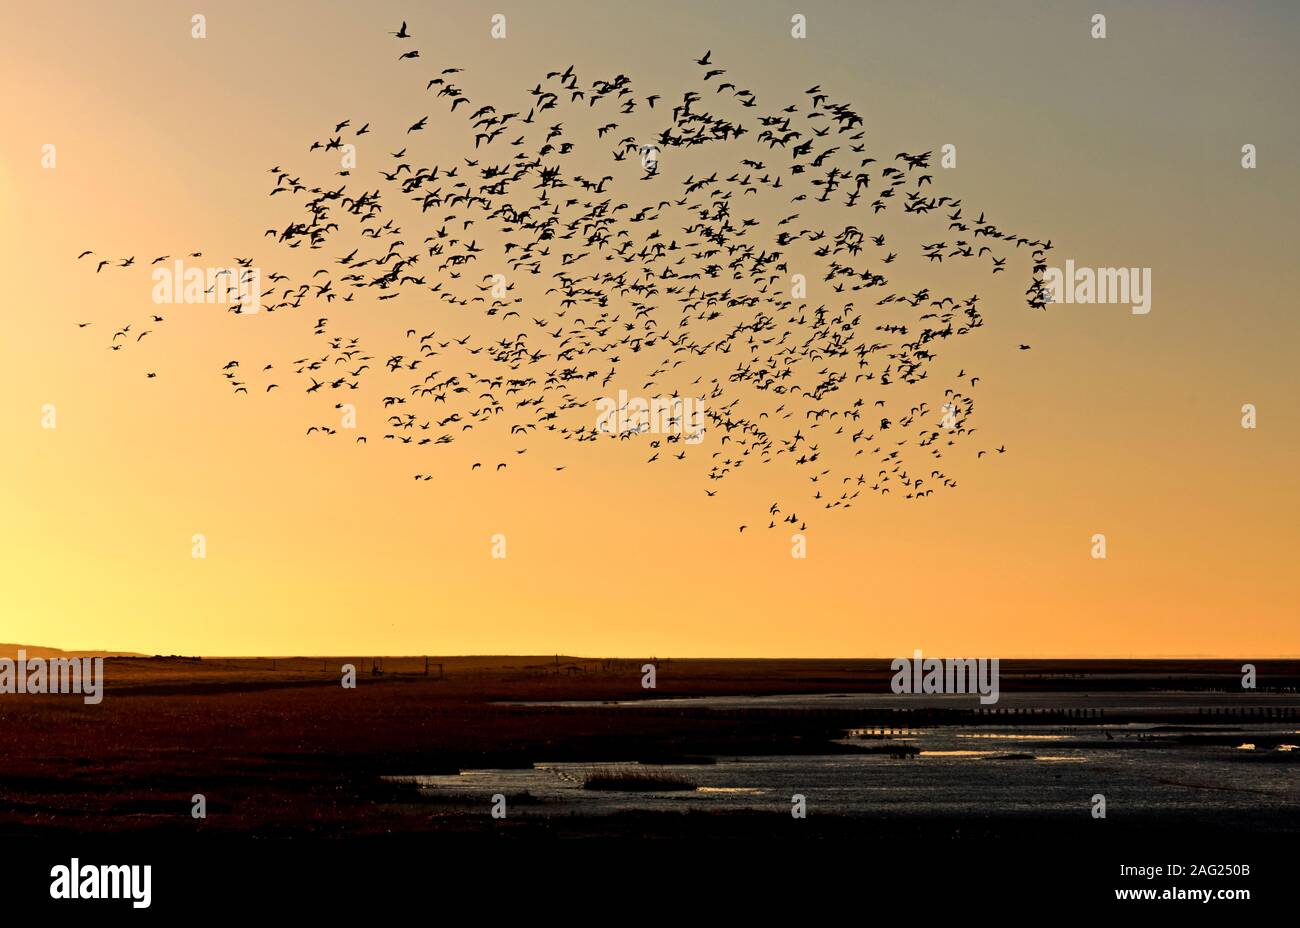 Un nombre impressionnant d'oiseaux ont été observées sur la mer du Nord pendant le coucher du soleil. Banque D'Images